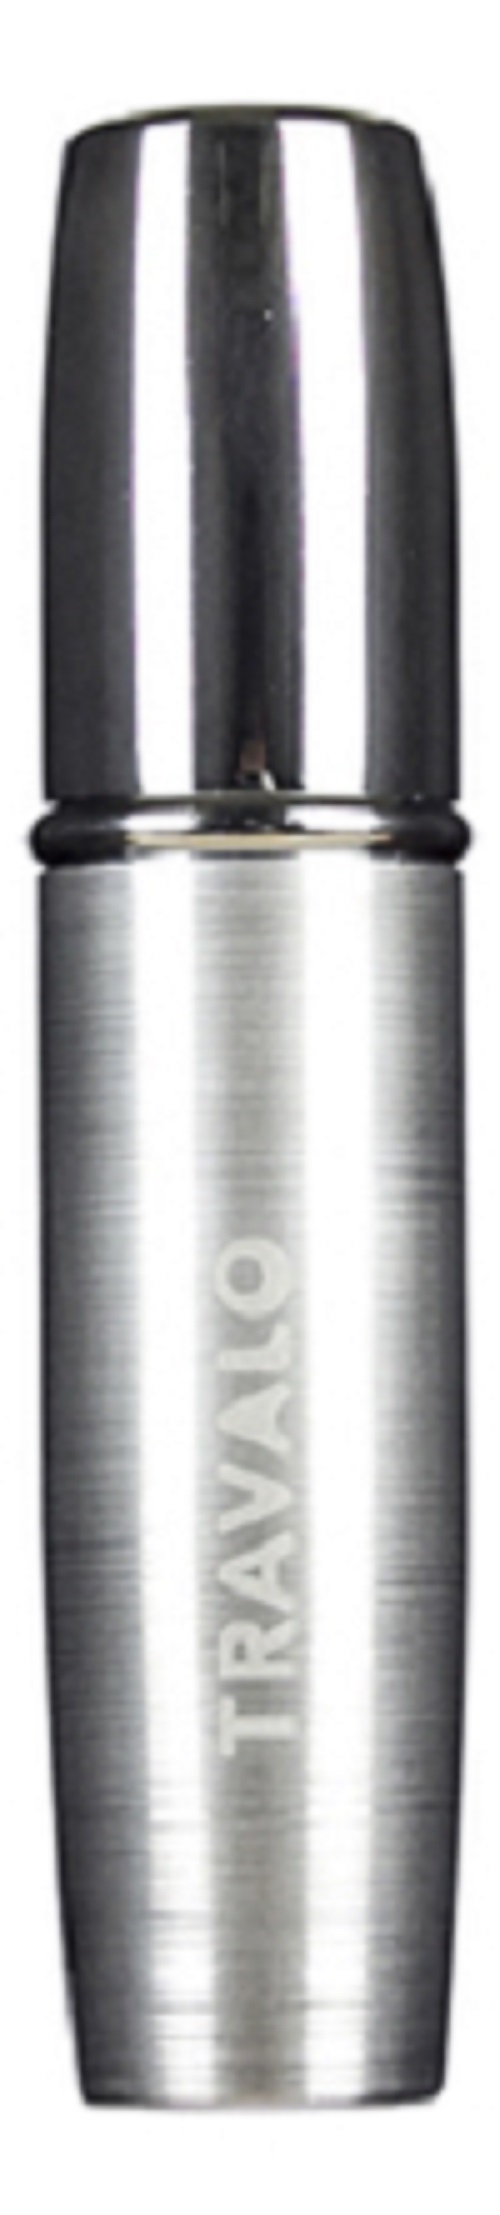 атомайзер емкость для духов tripla серебристый 5 мл Атомайзер Travalo Lux Perfume Spray 5мл Silver